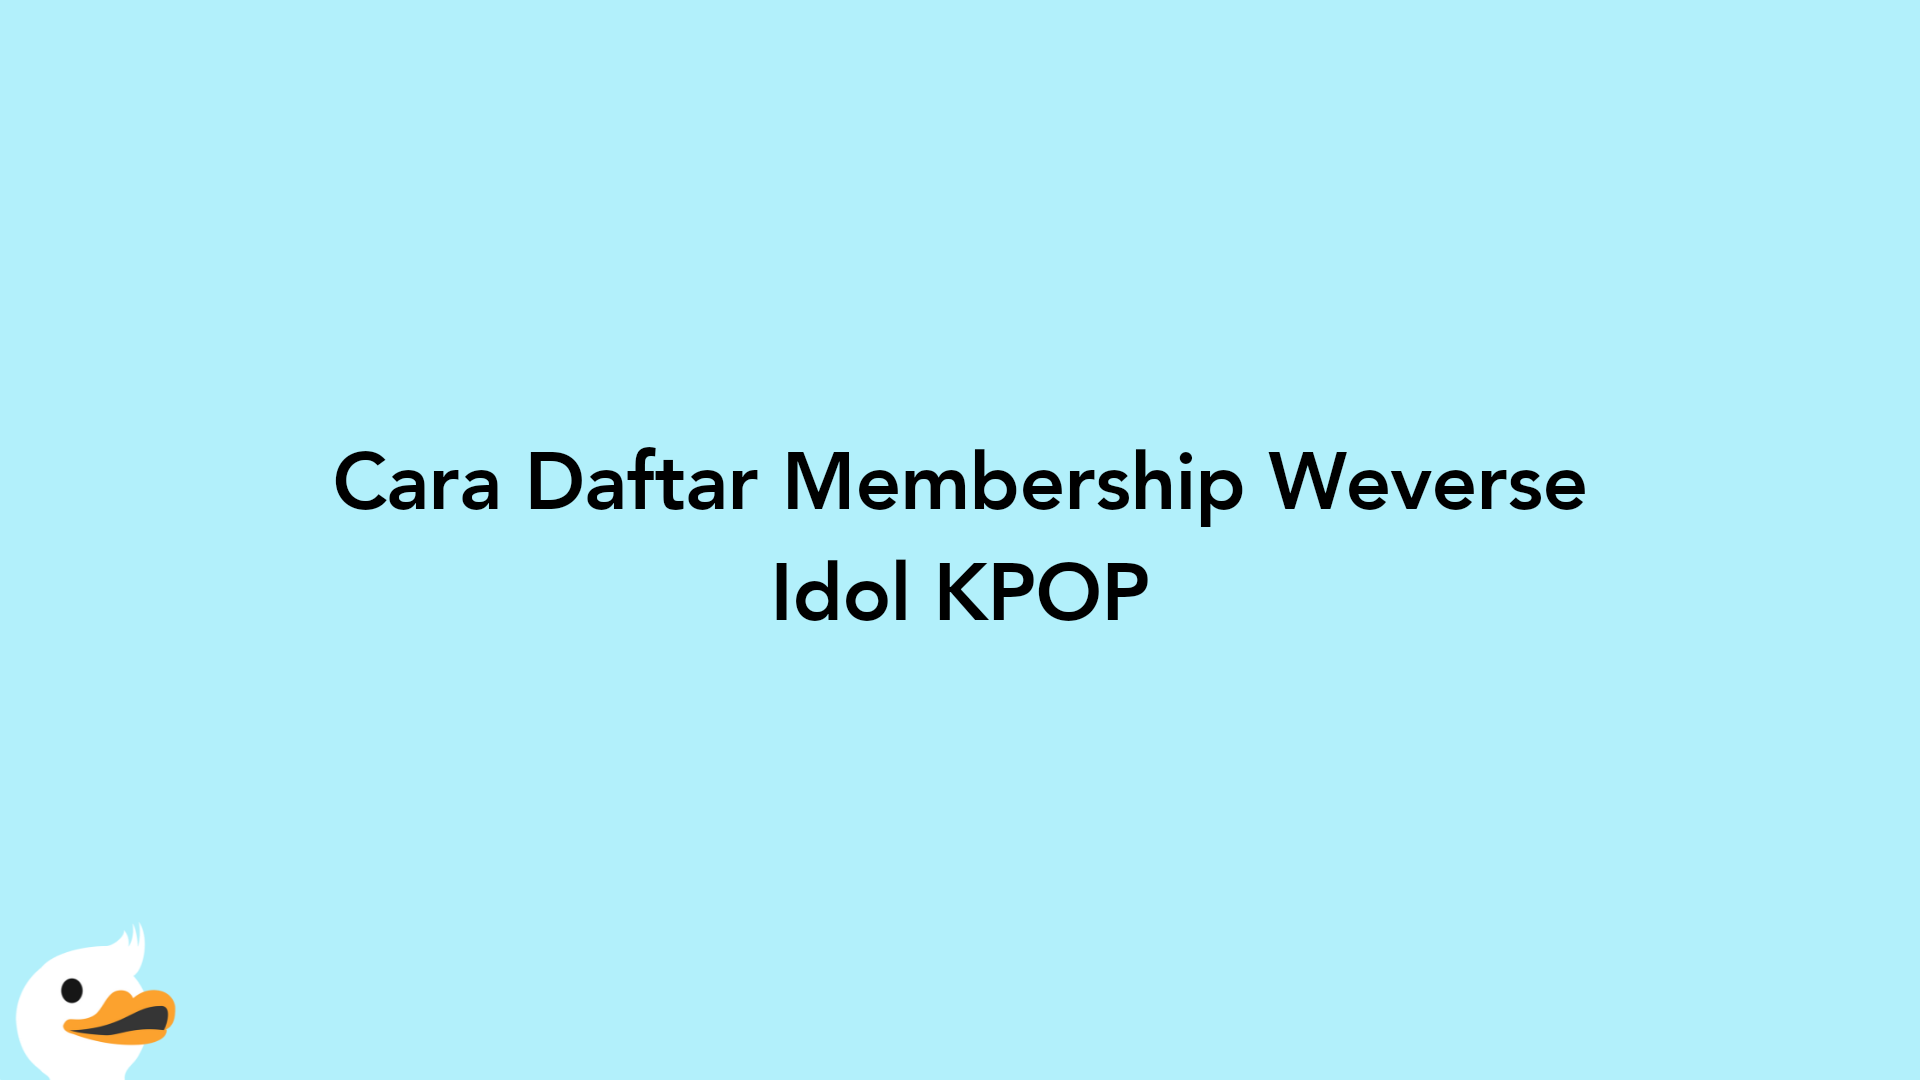 Cara Daftar Membership Weverse Idol KPOP